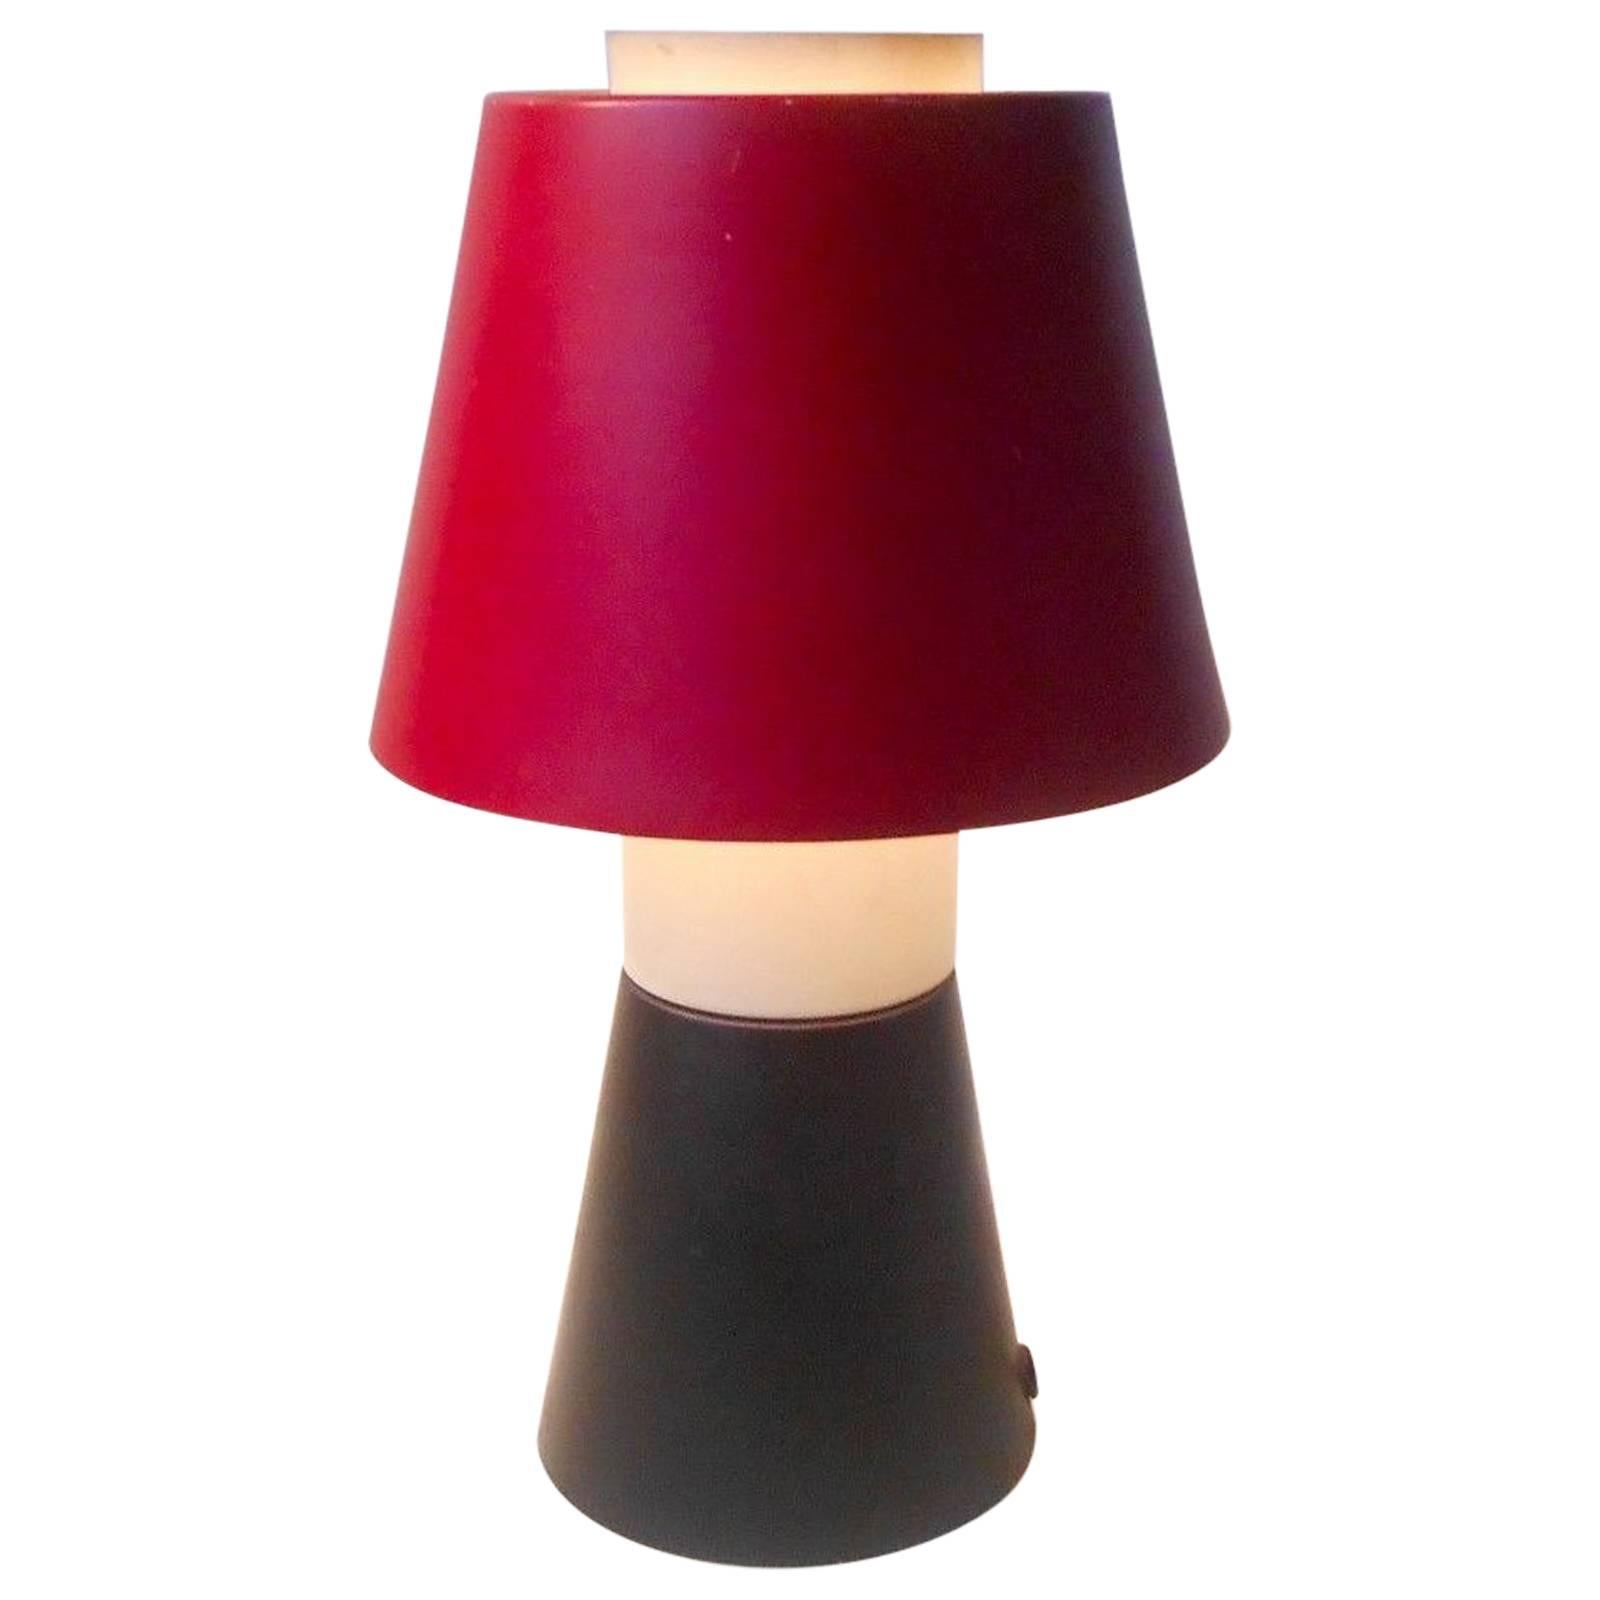 Rare 1950s Svend Aage Holm Sorensen Modernist Table Lamp Danish Stilnovo Style